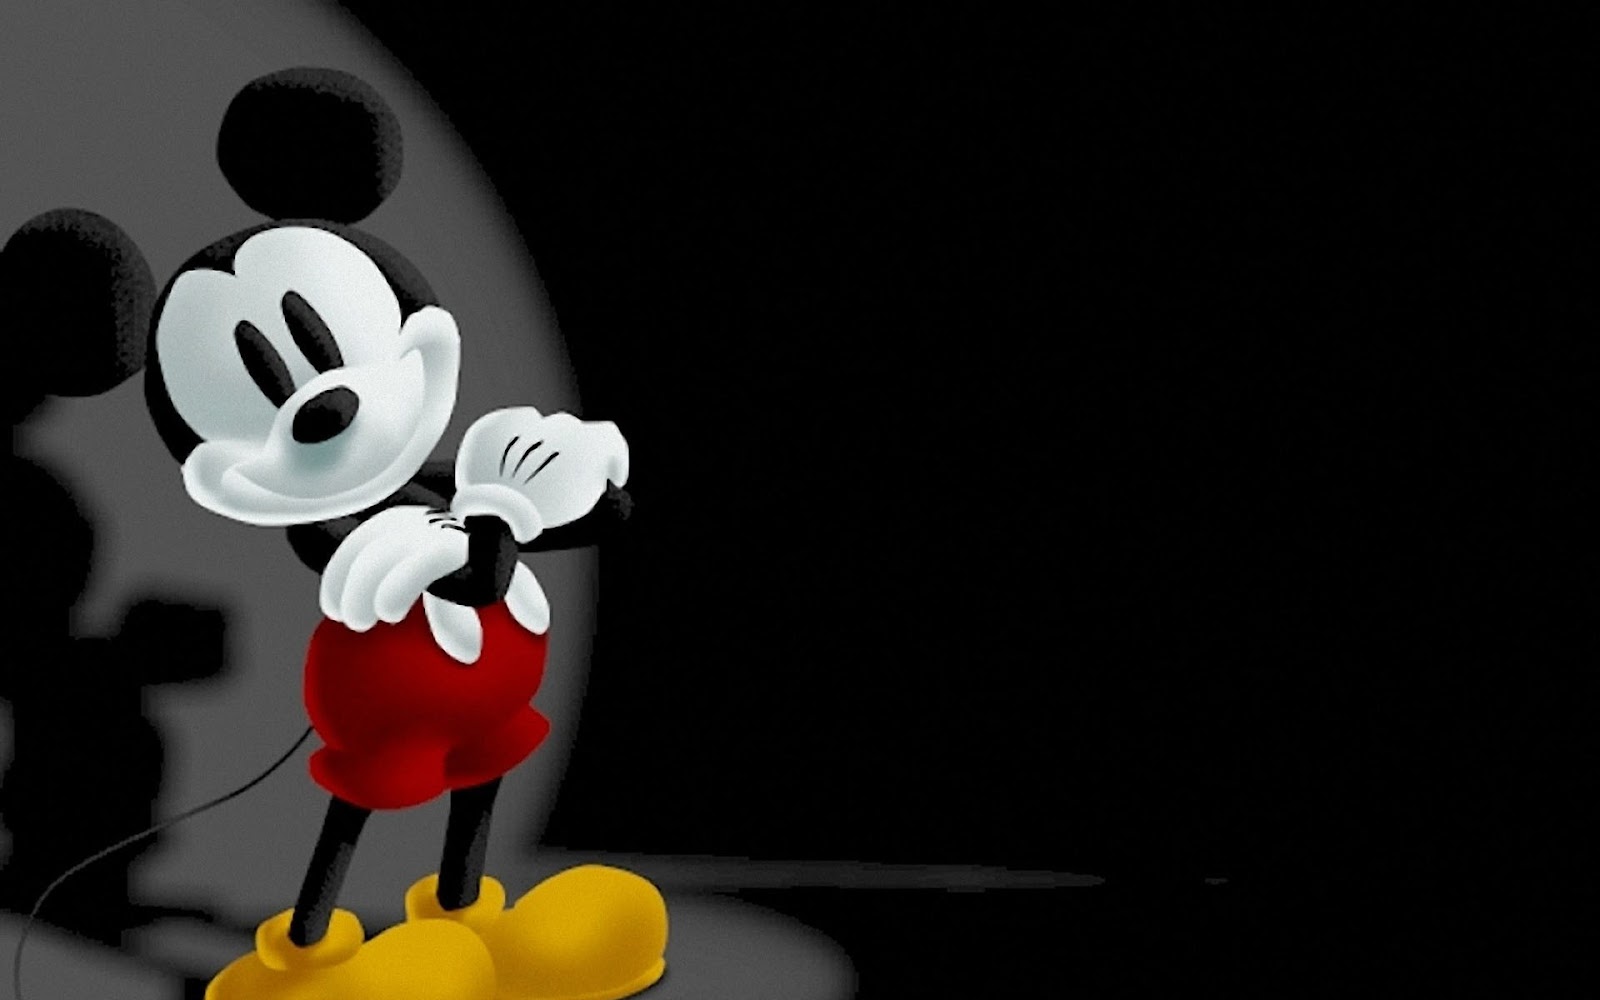 Mickey Mouse Images Full Kumpulan Gambar Lengkap